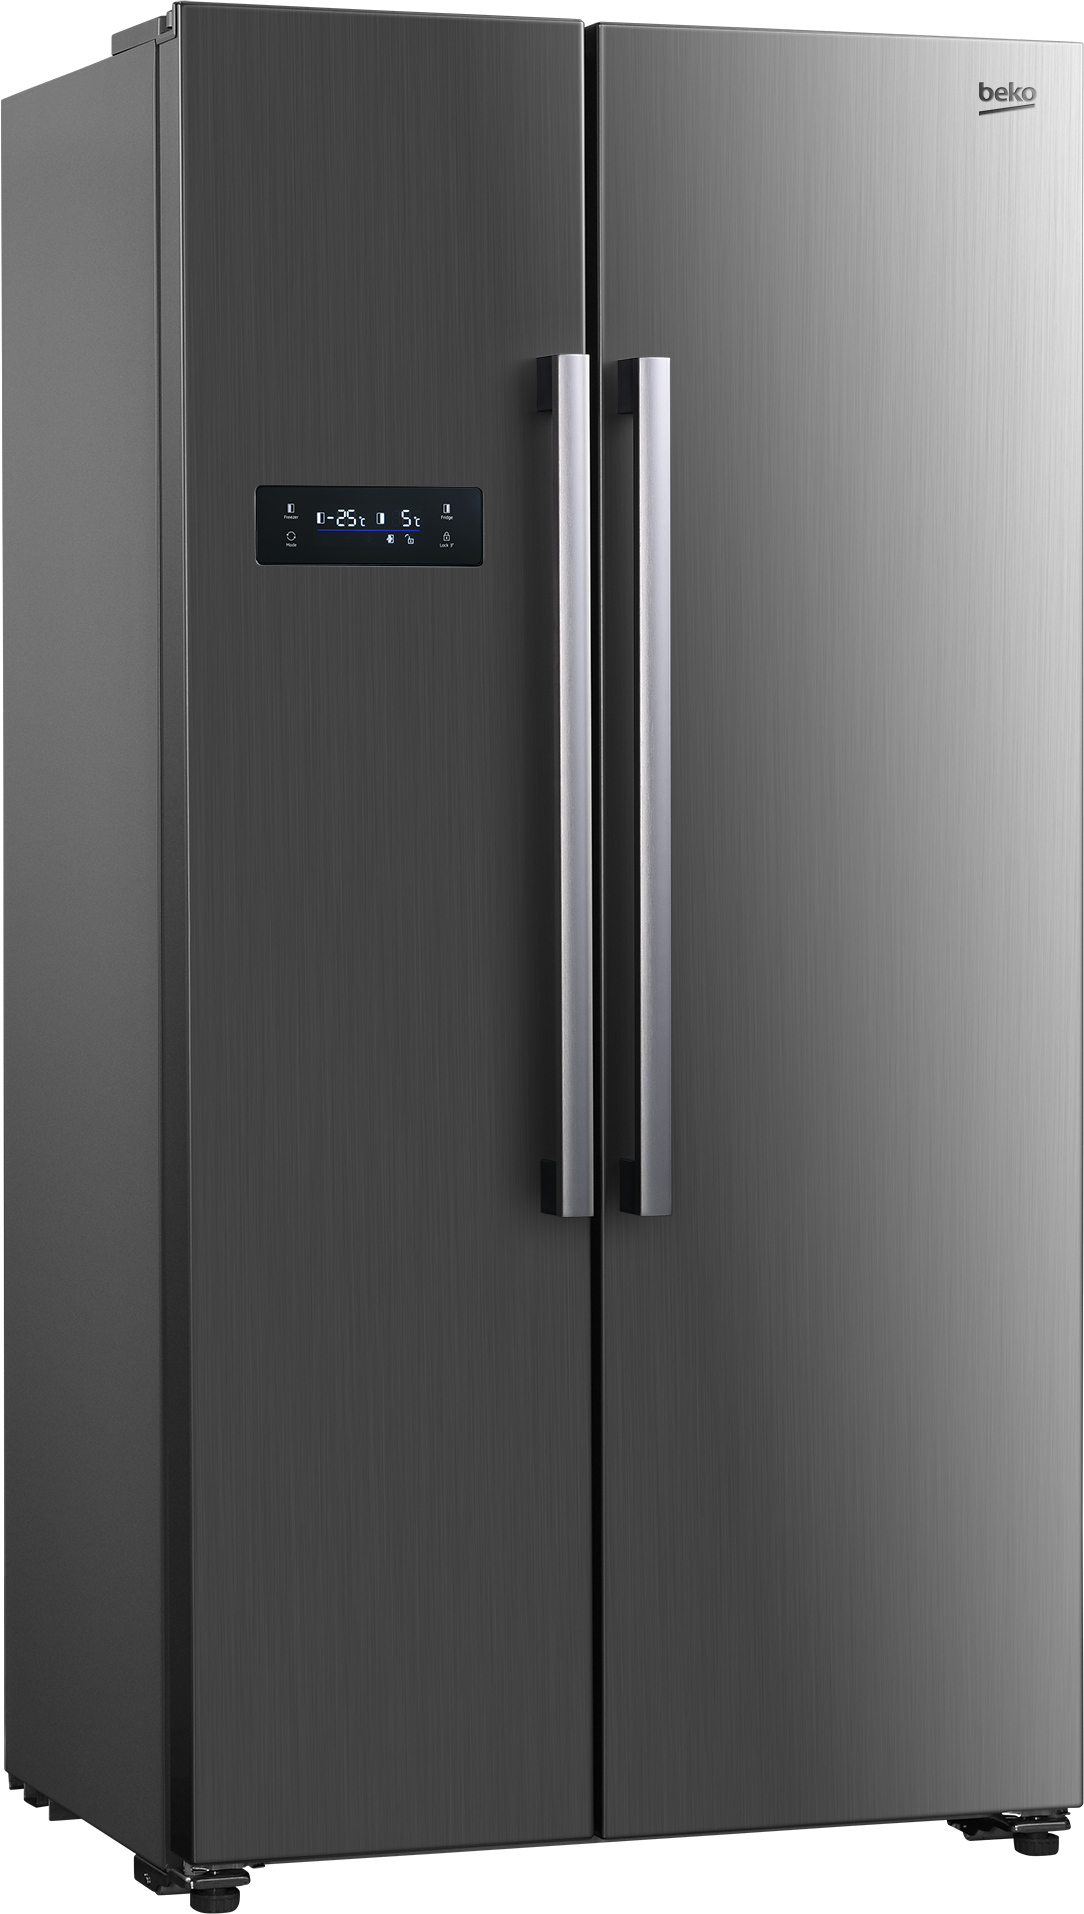 frigorífico 45 cm ancho – Compra frigorífico 45 cm ancho con envío gratis  en AliExpress version